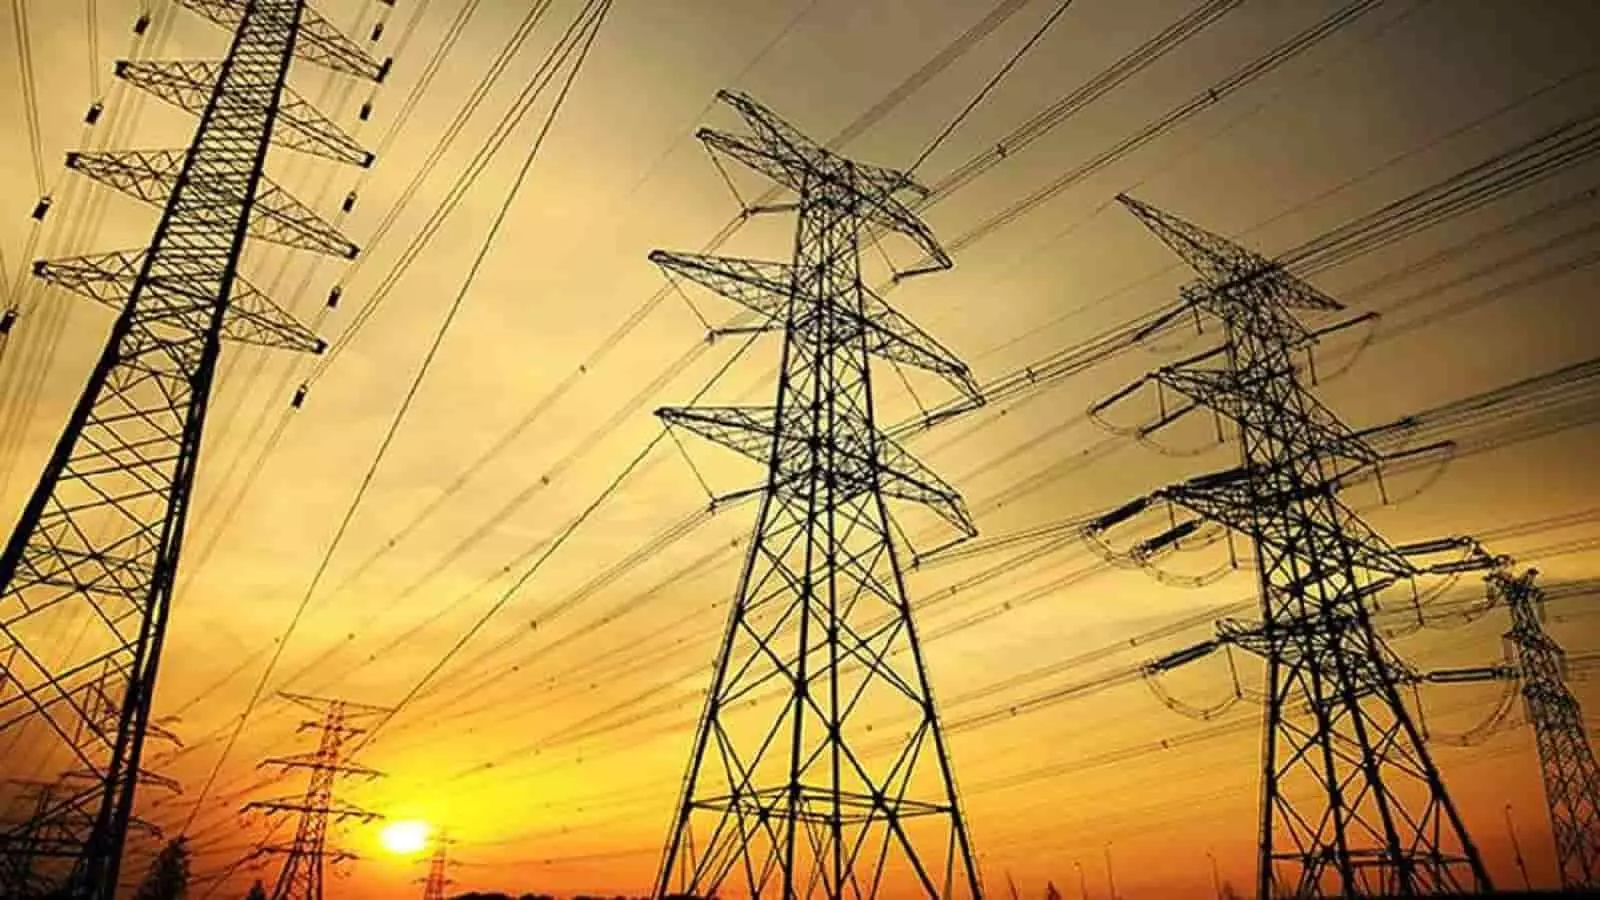 एमपी के सिवनी और नरसिंगपुर को सरकार की सौगात, बिजली व्यवस्था के लिए 209 करोड़ की मिली स्वीकृत